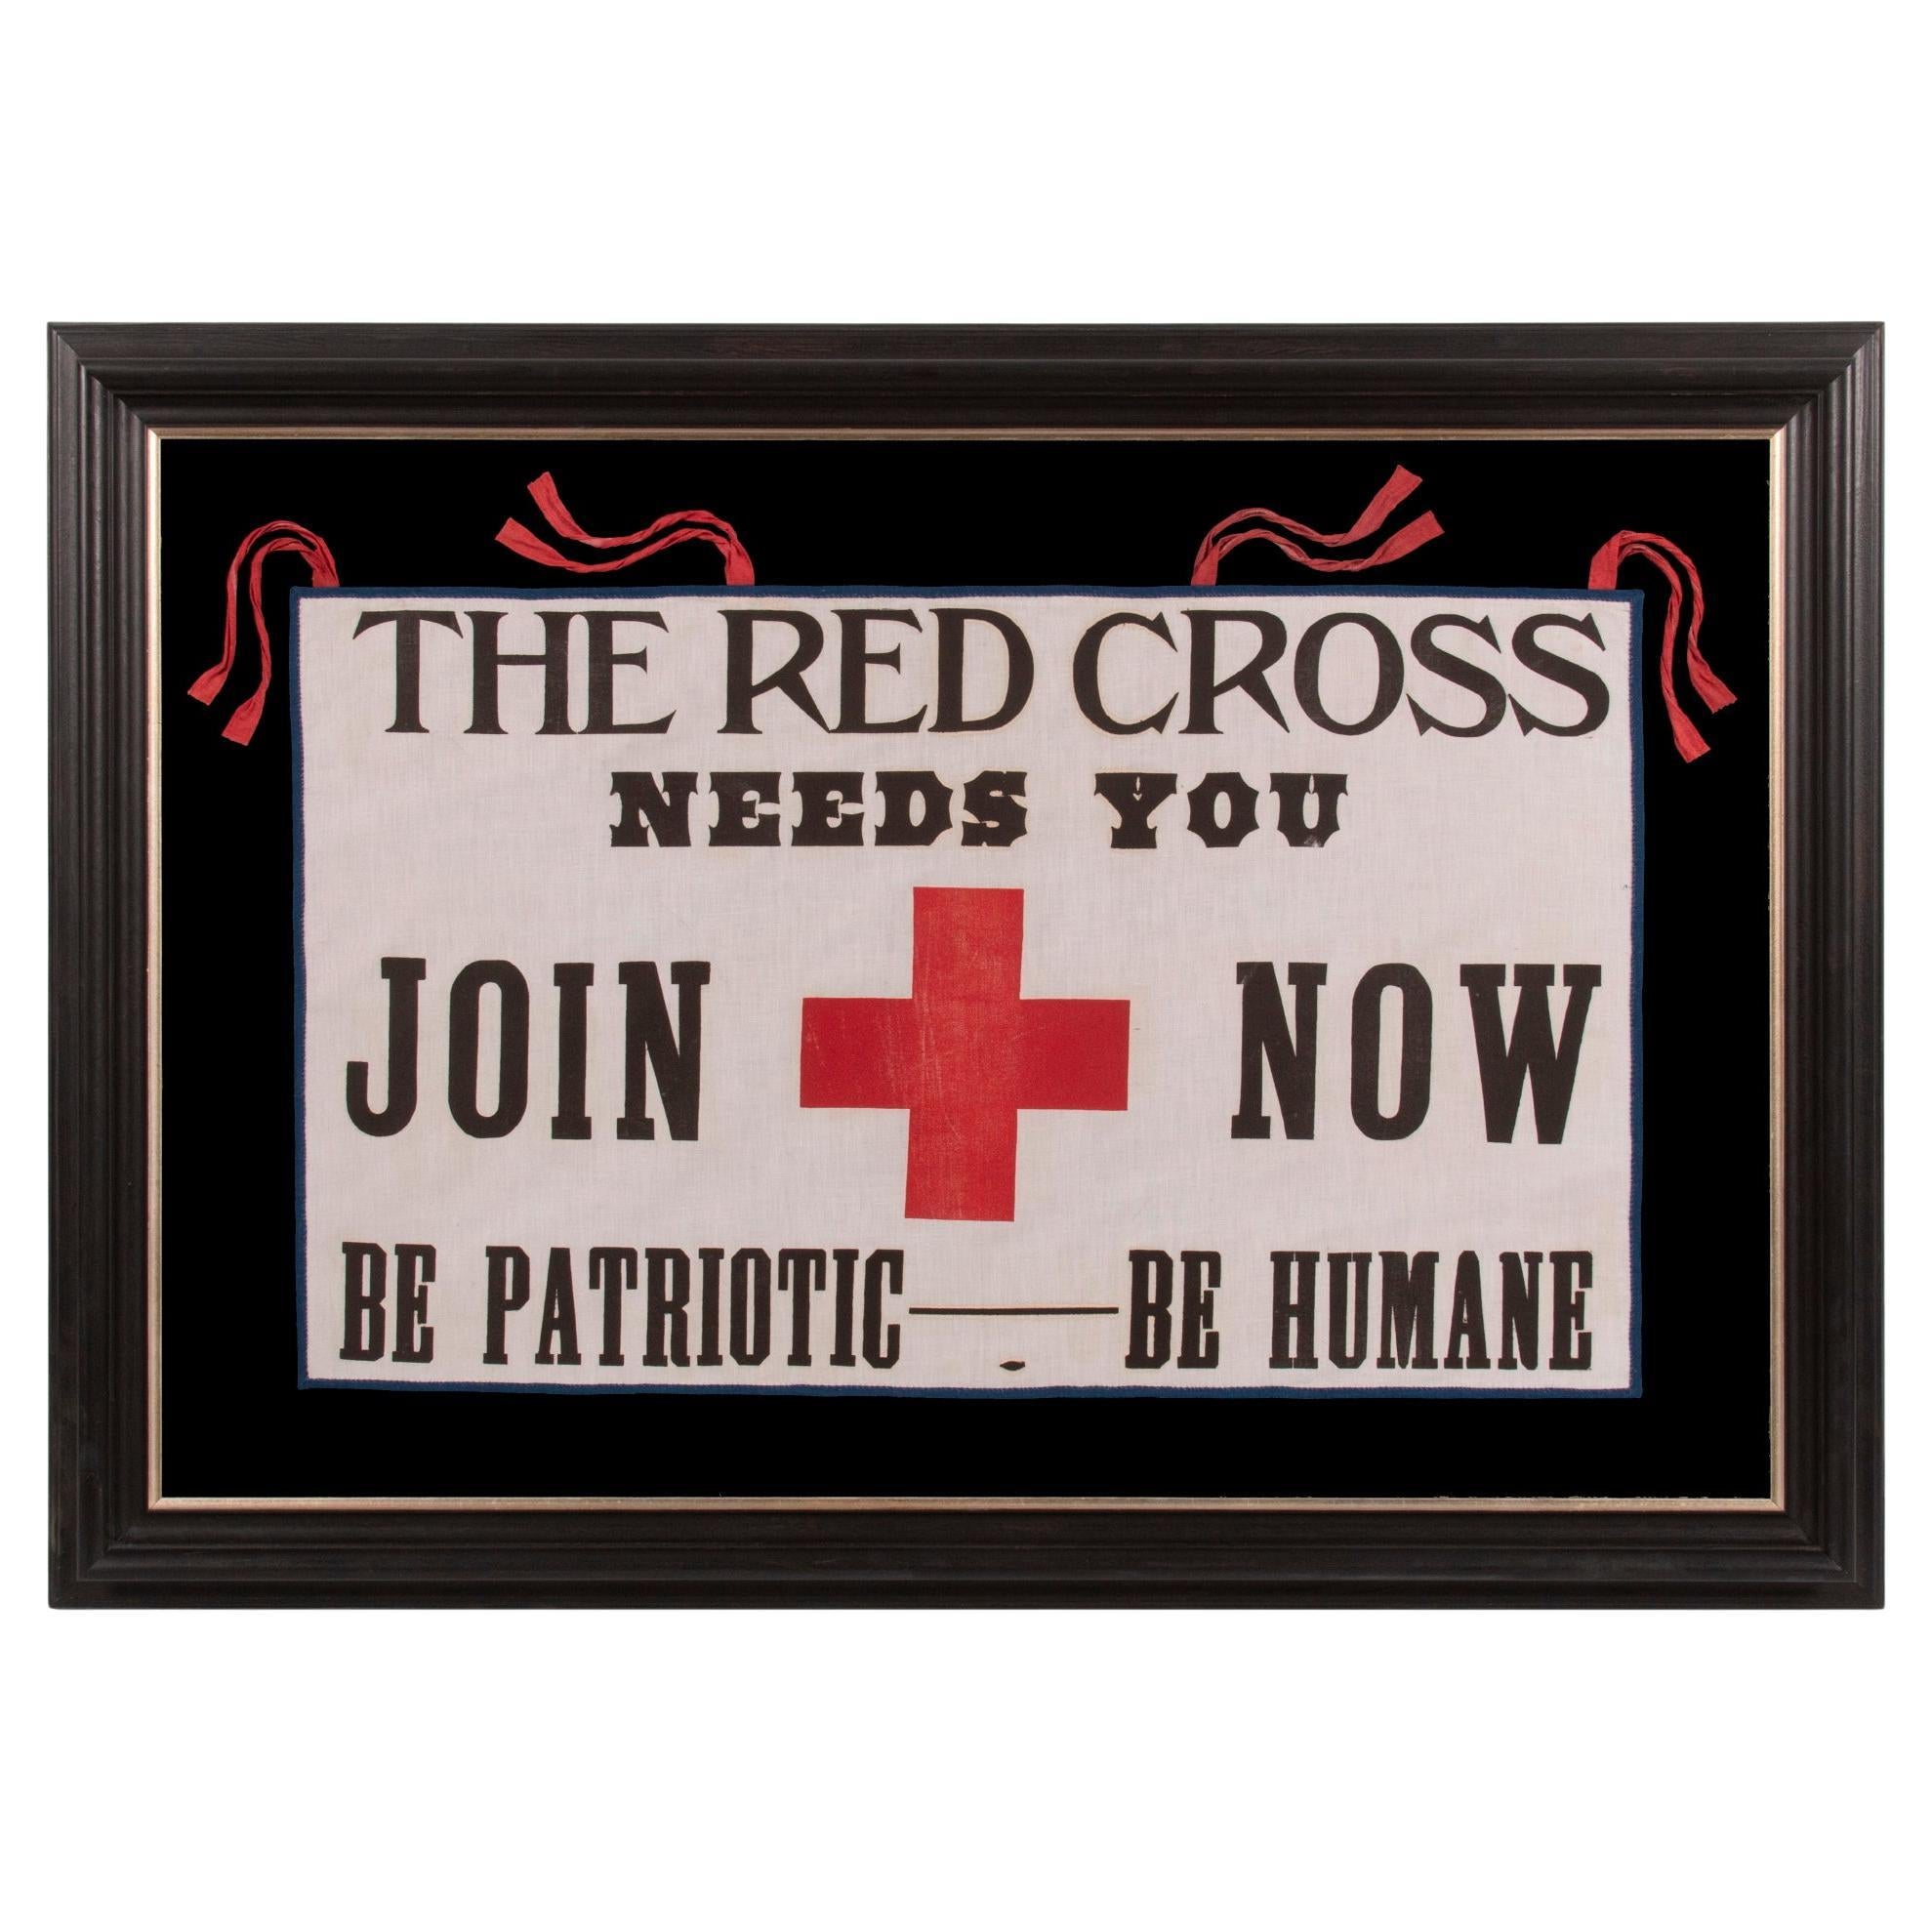 Bannière de la Red Cross avec lettrage fantaisiste, vers 1917 - 1918